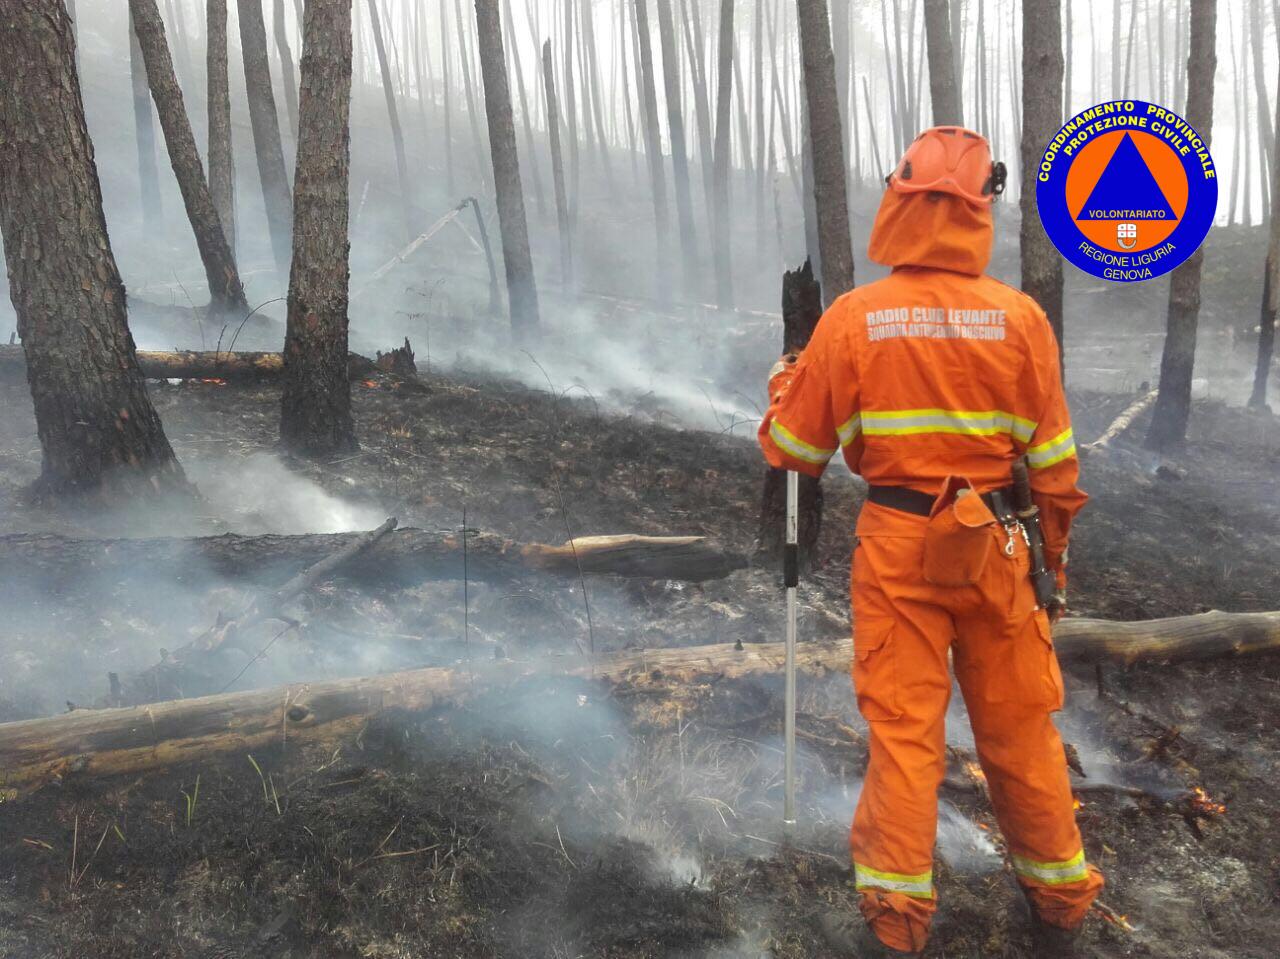 Canadair ancora in azione per l’incendio boschivo di Bonassola